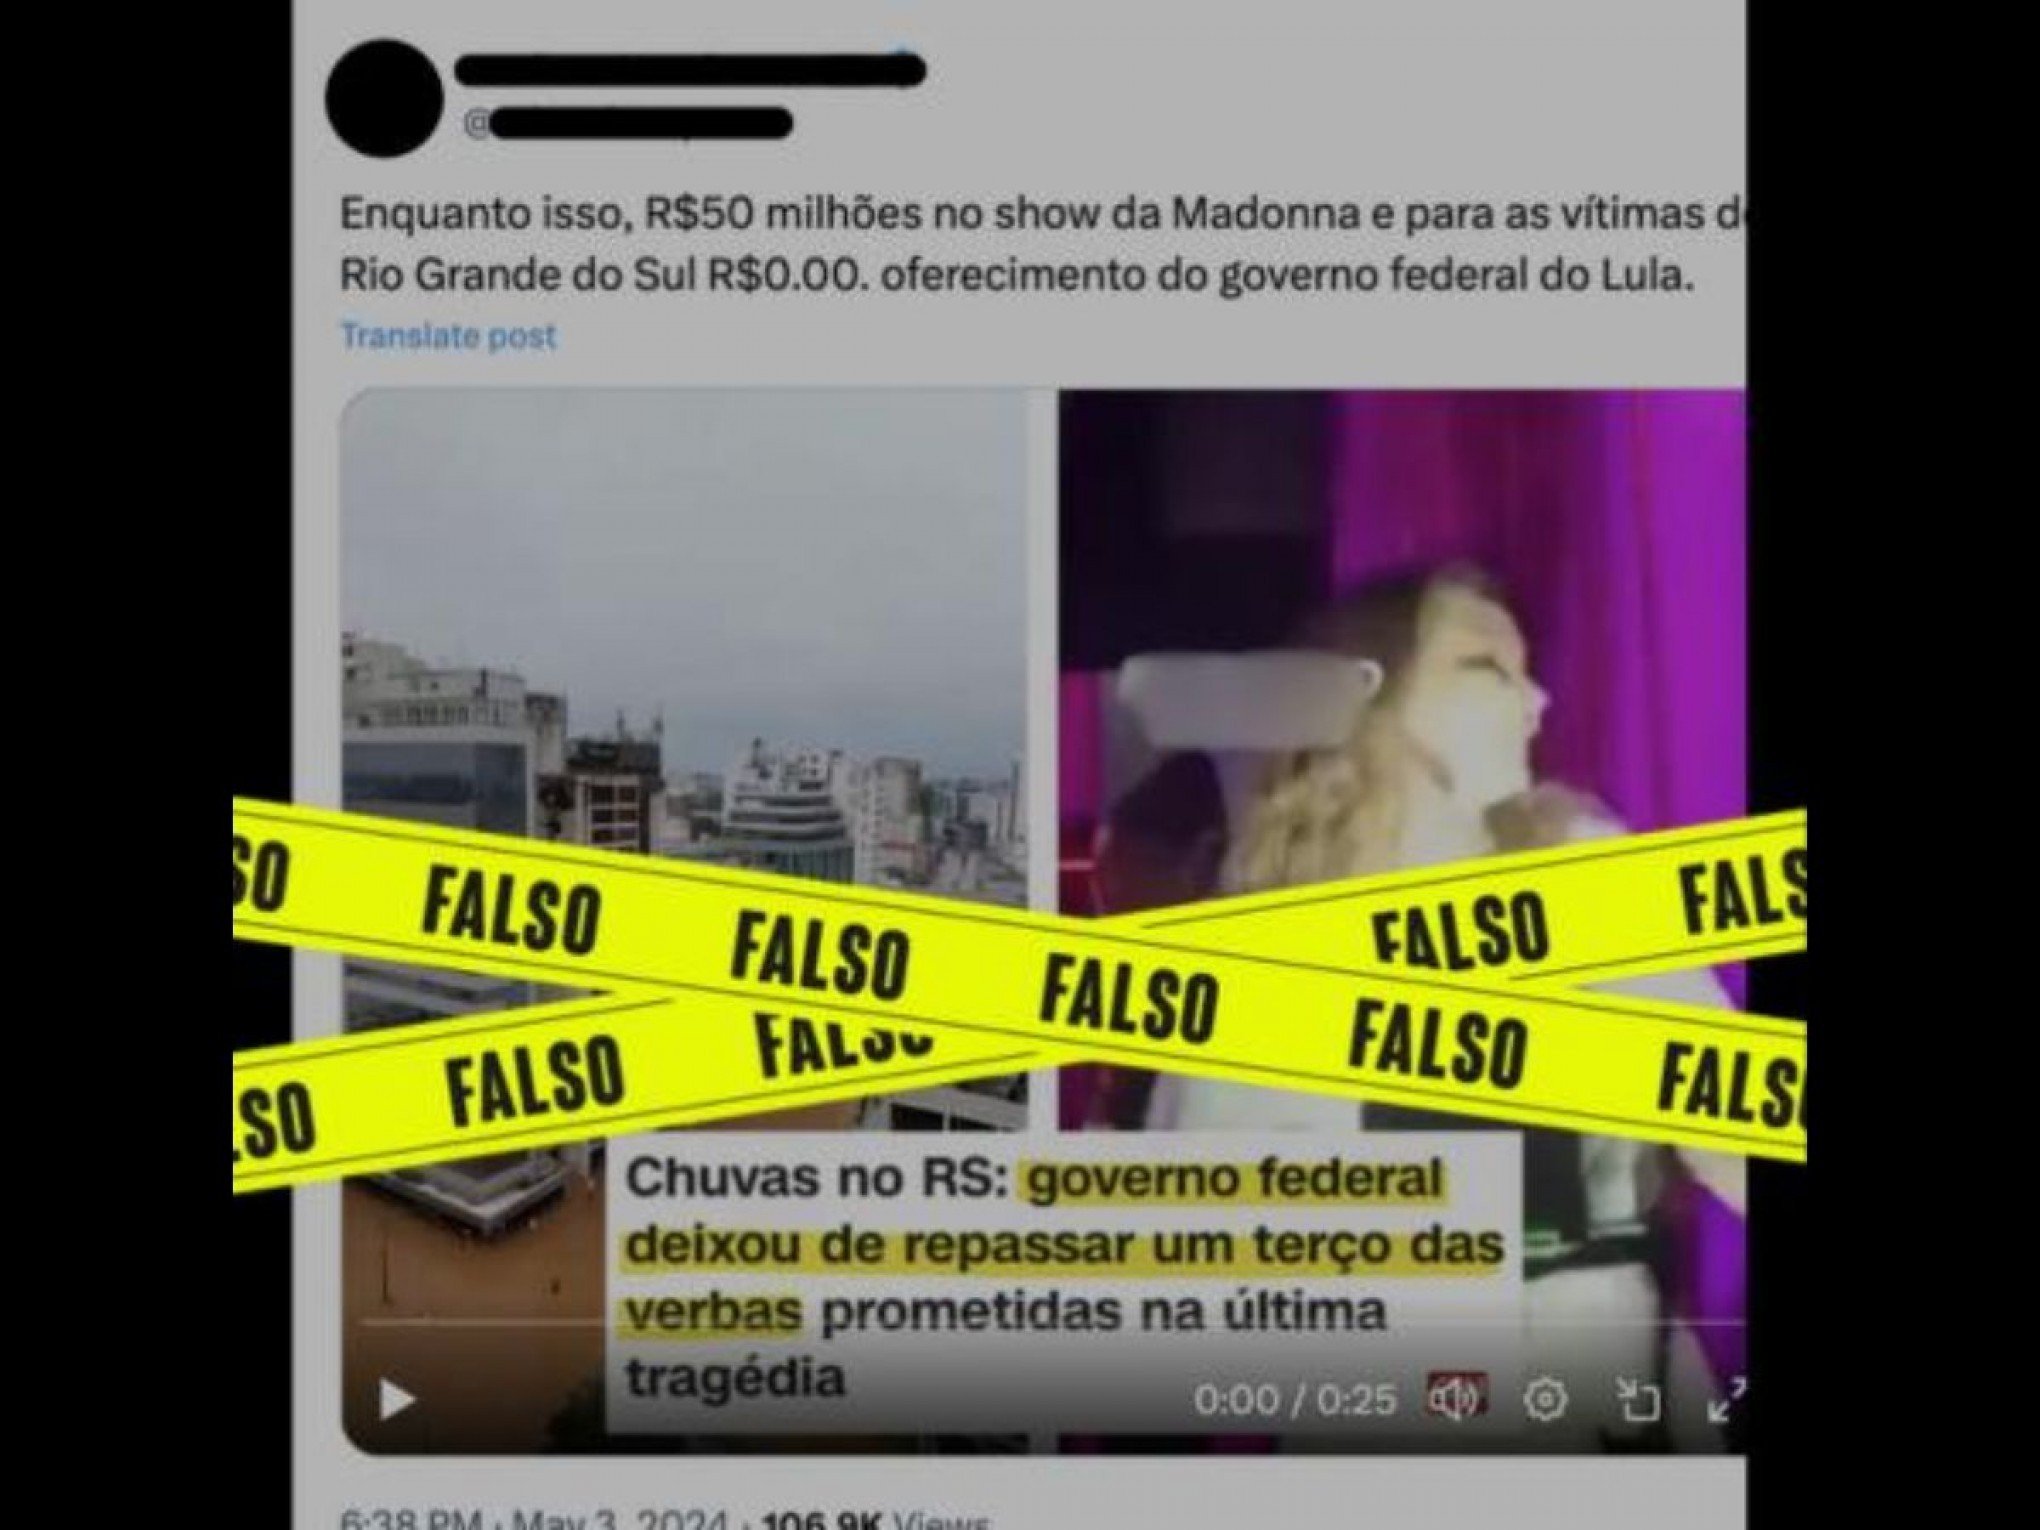 É falso que Governo Lula patrocinou show da Madonna e deixou de enviar recursos para as vítimas das tragédias no RS